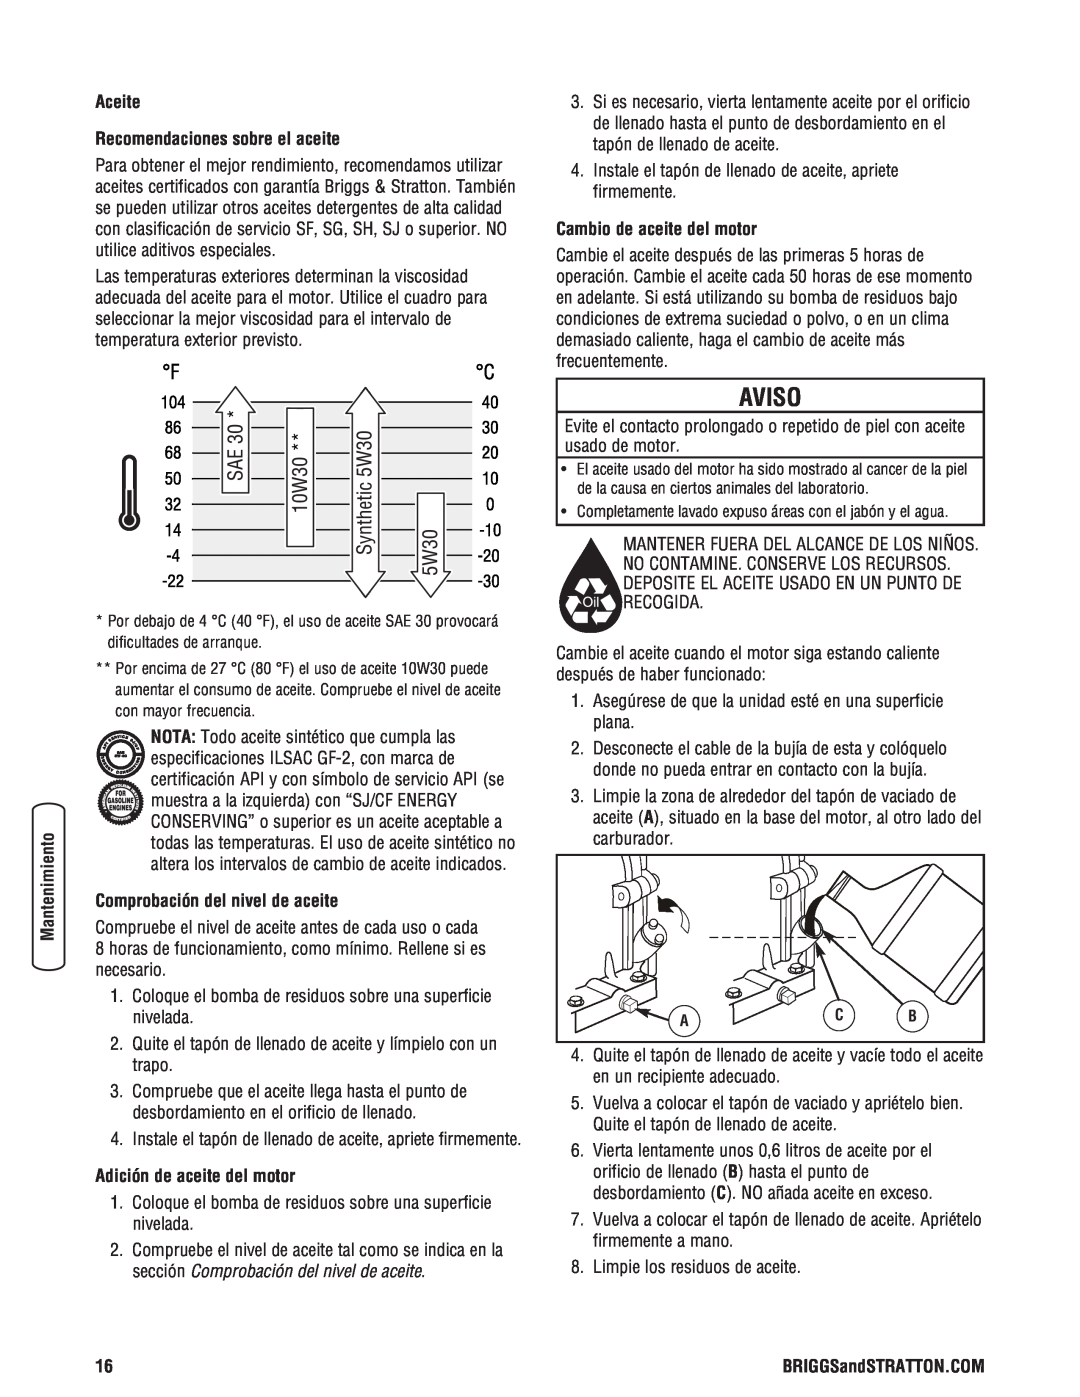 Briggs & Stratton 205378GS manual Aceite Recomendaciones sobre el aceite, Comprobación del nivel de aceite, Aviso 